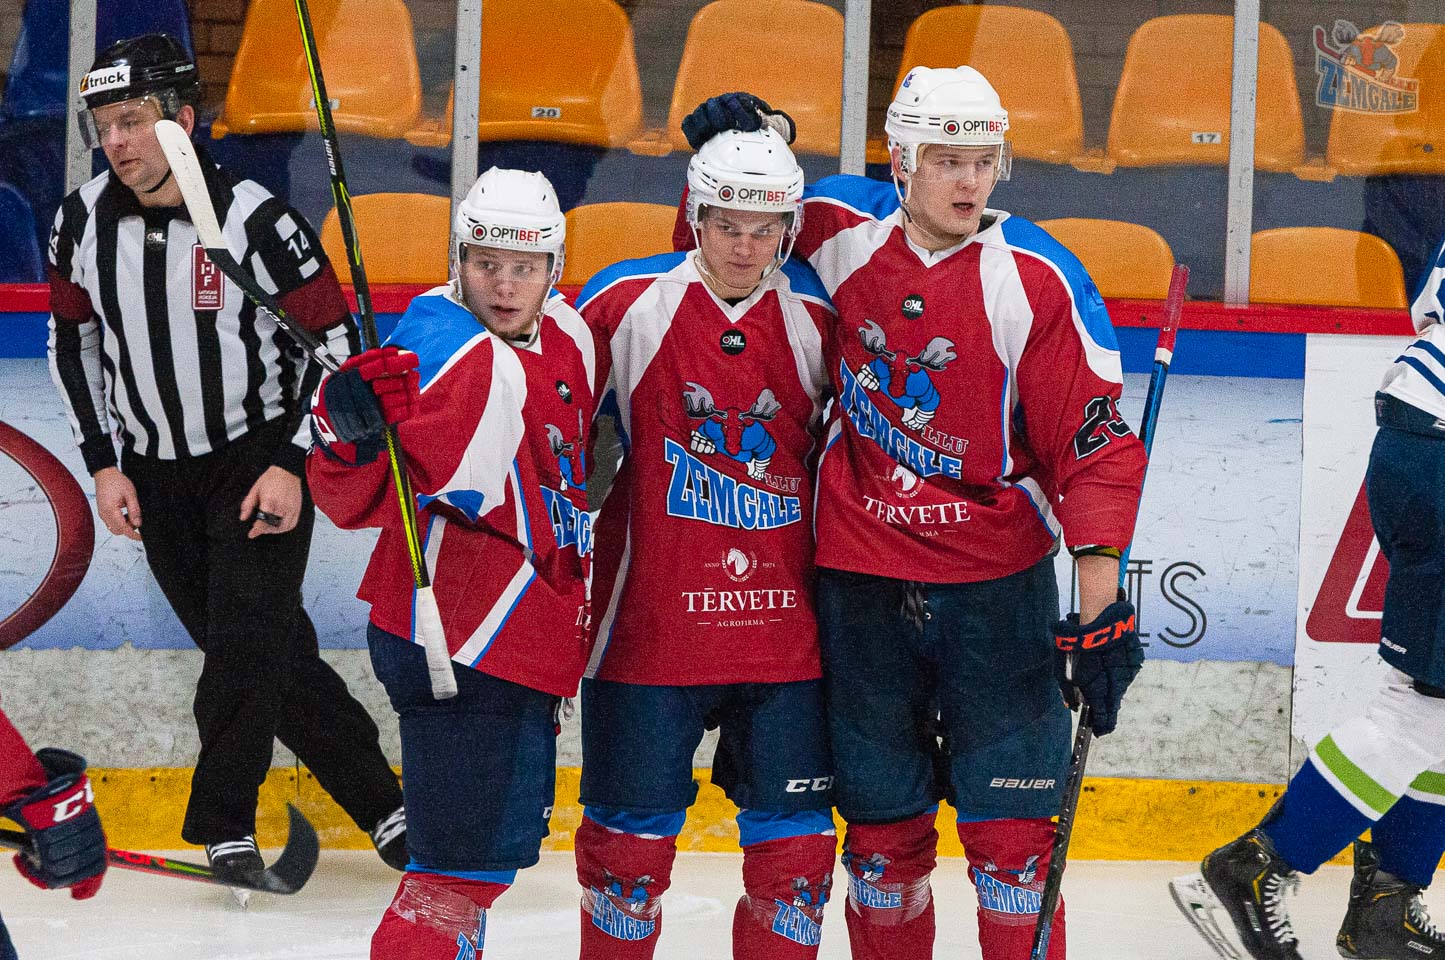 Optibet hokeja līgas regulārā čempionāta spēle starp HK “Zemgale/LLU” un HK “Mogo” Jelgavas ledus hallē 2020. gada 15. februārī | Foto: Ruslans Antropovs